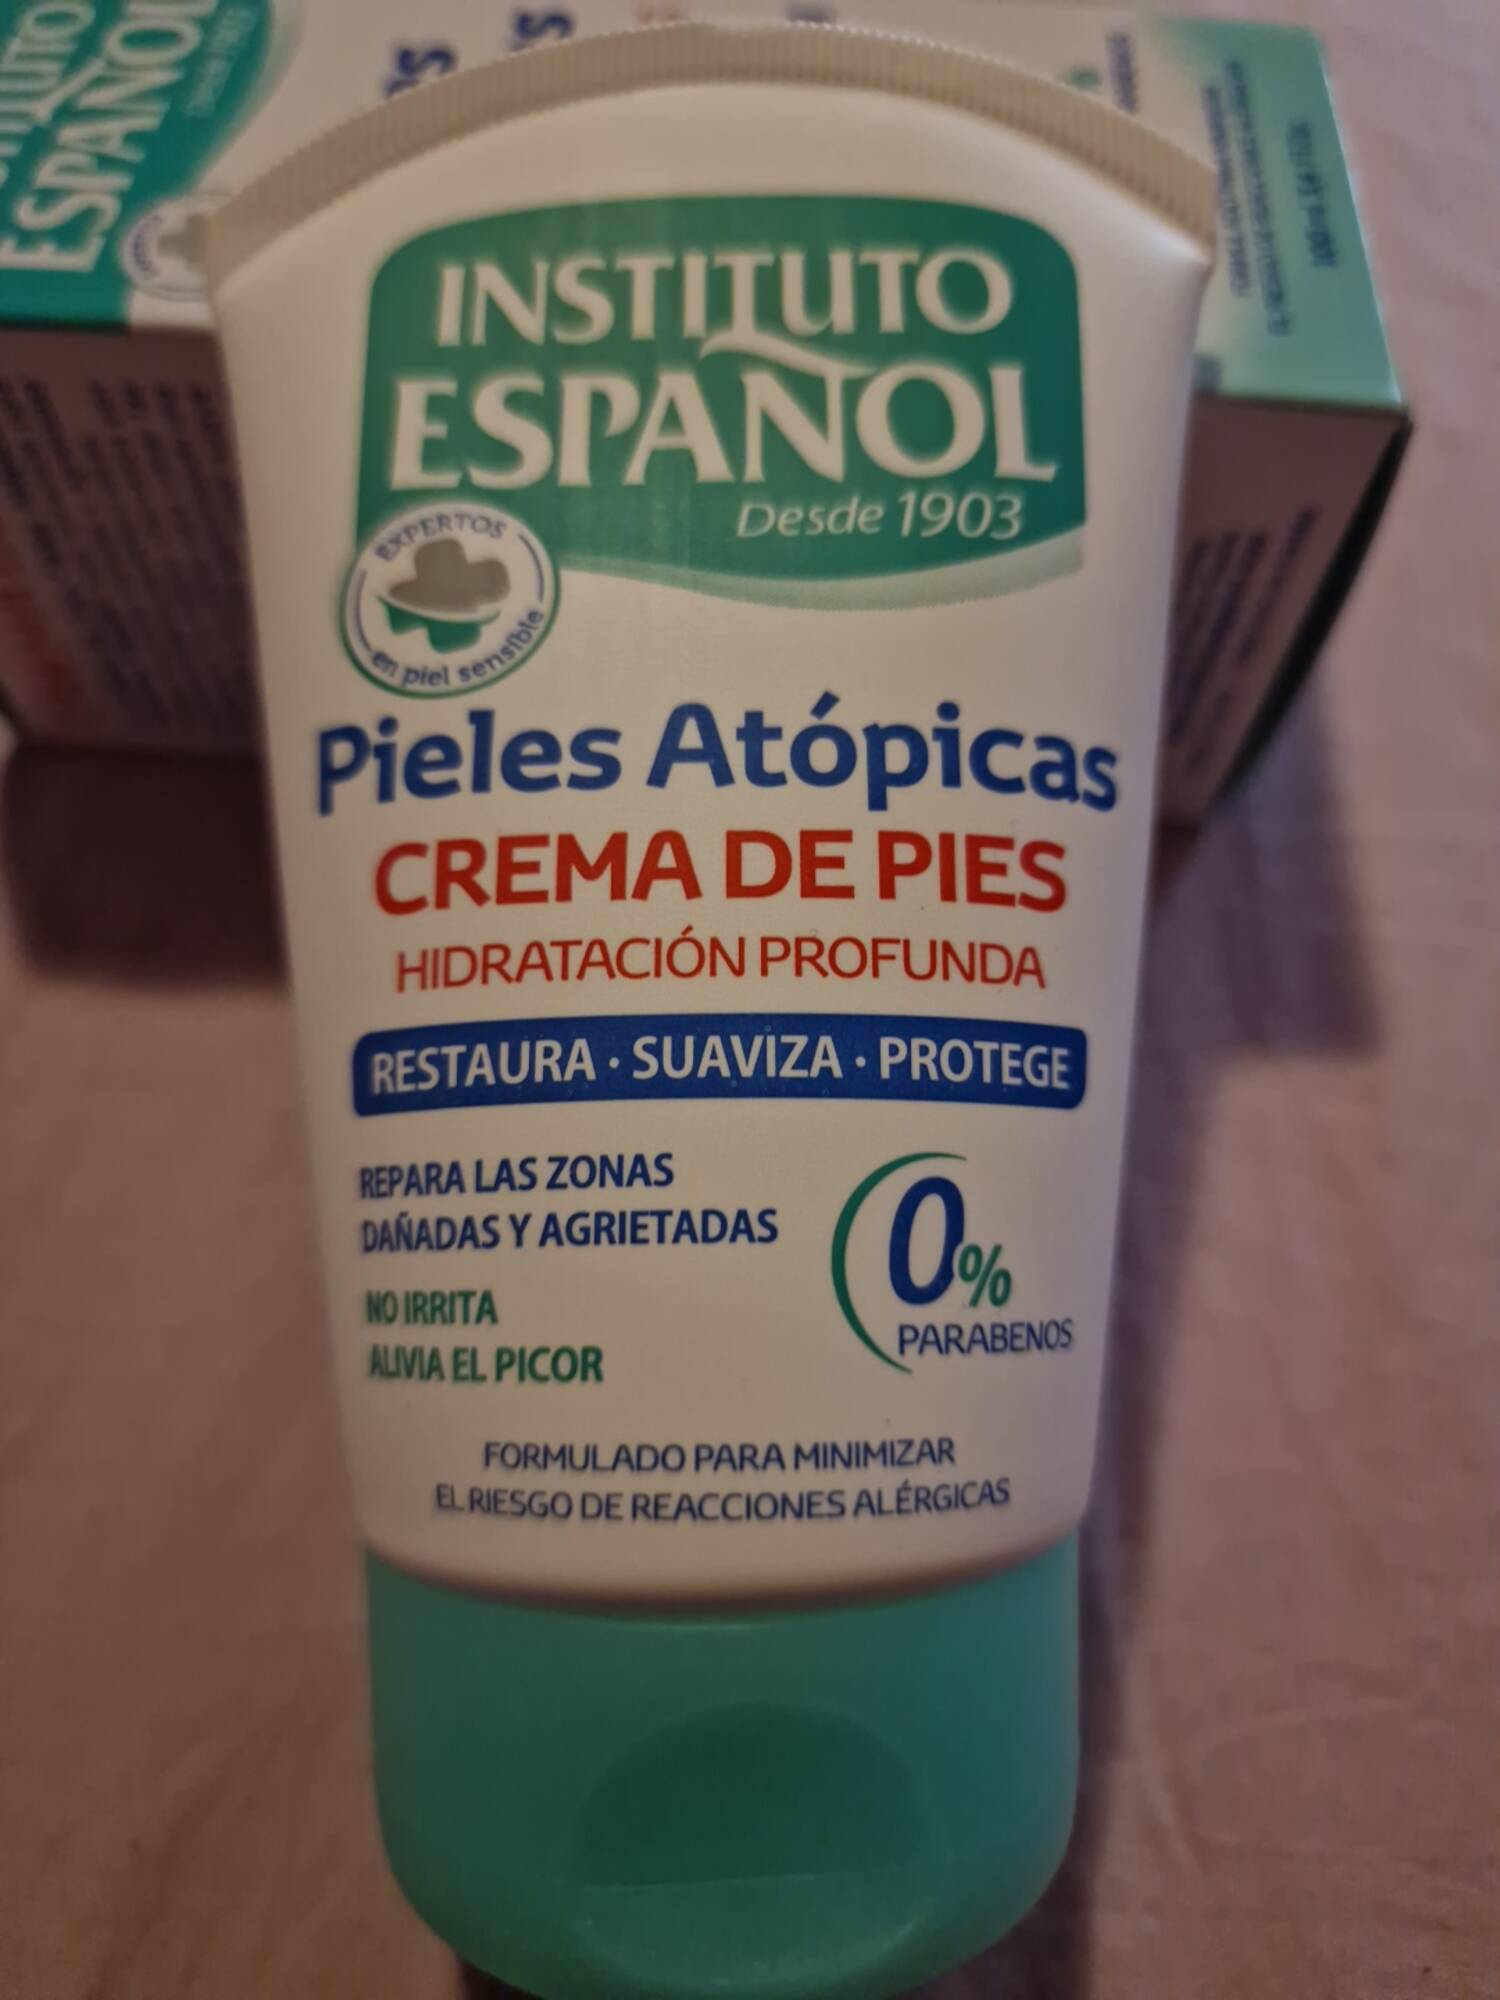 INSTITUTO ESPANOL - Crema de pies hidratacion profunda